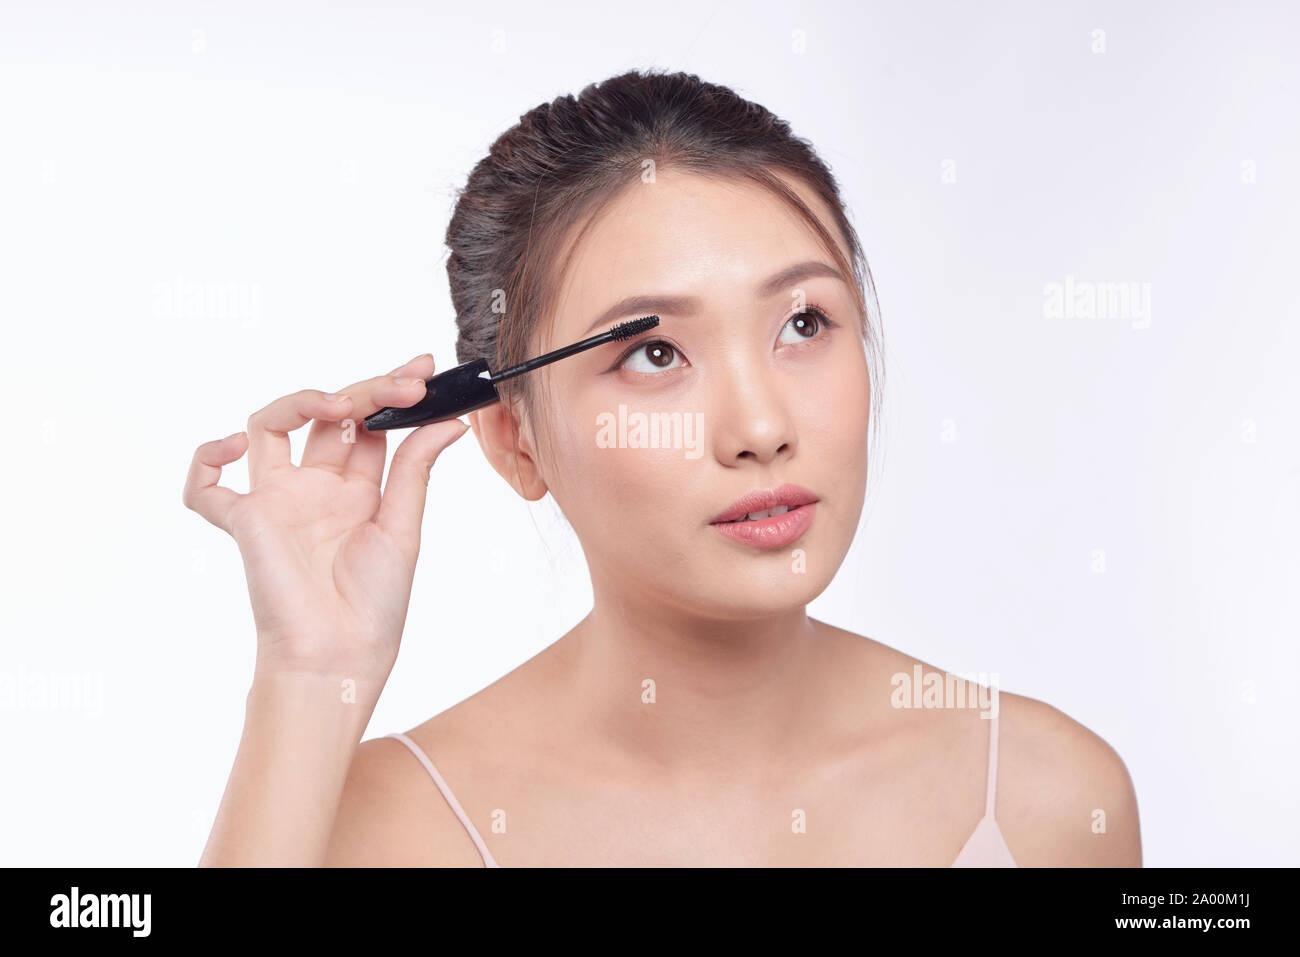 Woman putting Mascara maquillage sur les yeux. Modèle féminin asiatique  face closeup oeil avec la brosse sur les cils Photo Stock - Alamy